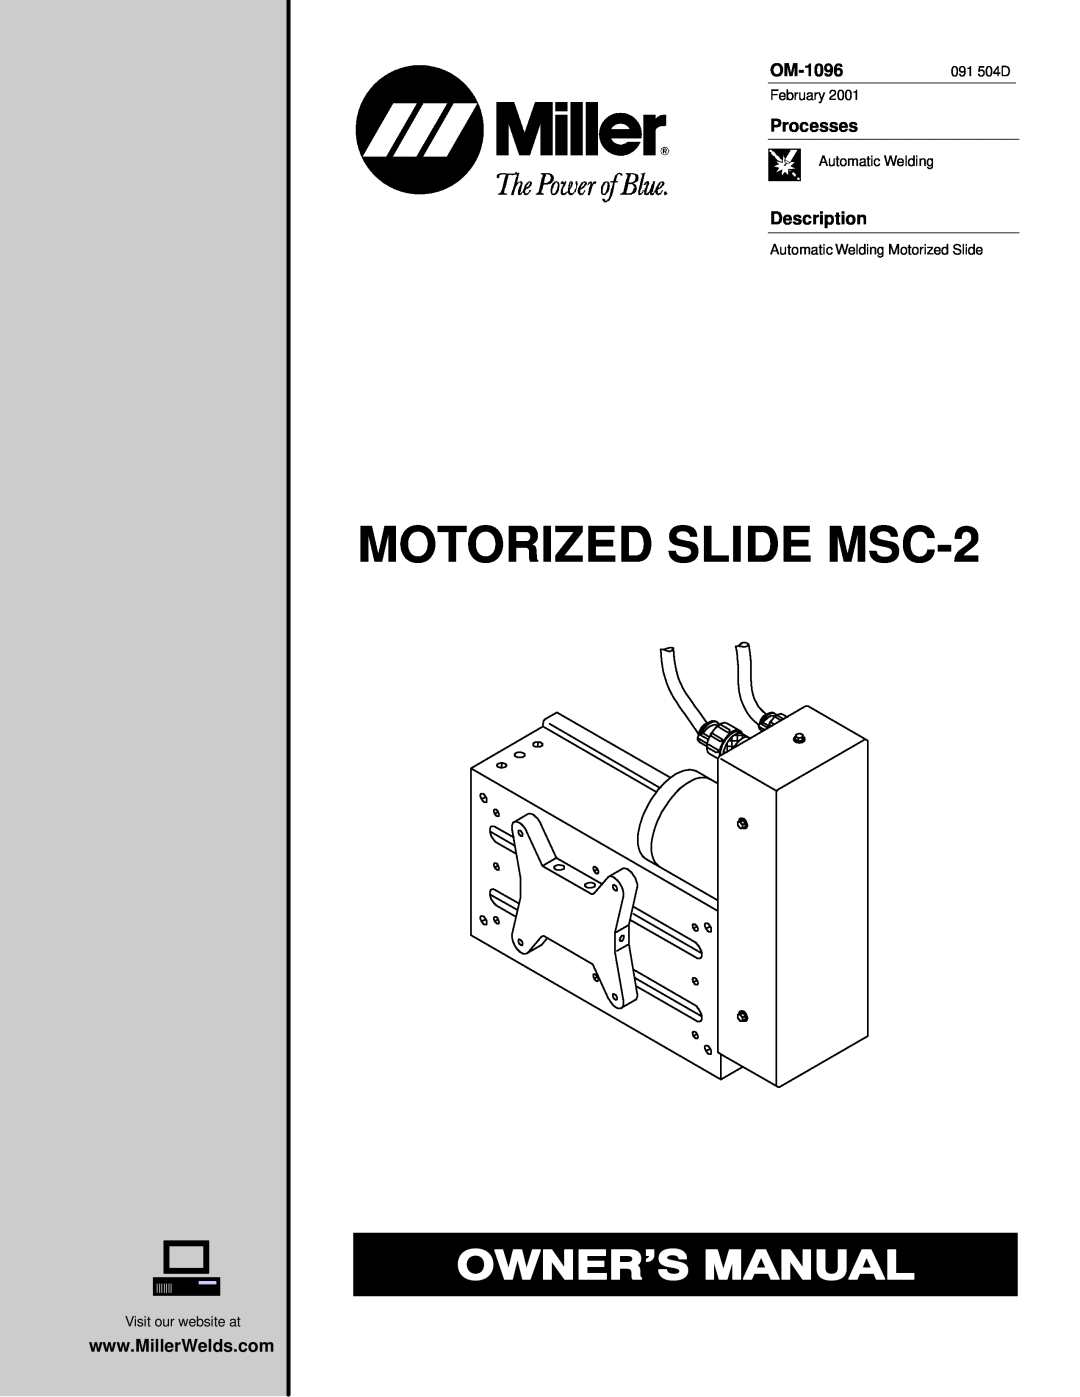 Miller Electric manual MOTORIZED SLIDE MSC-2, OM-1096, Processes, Description 